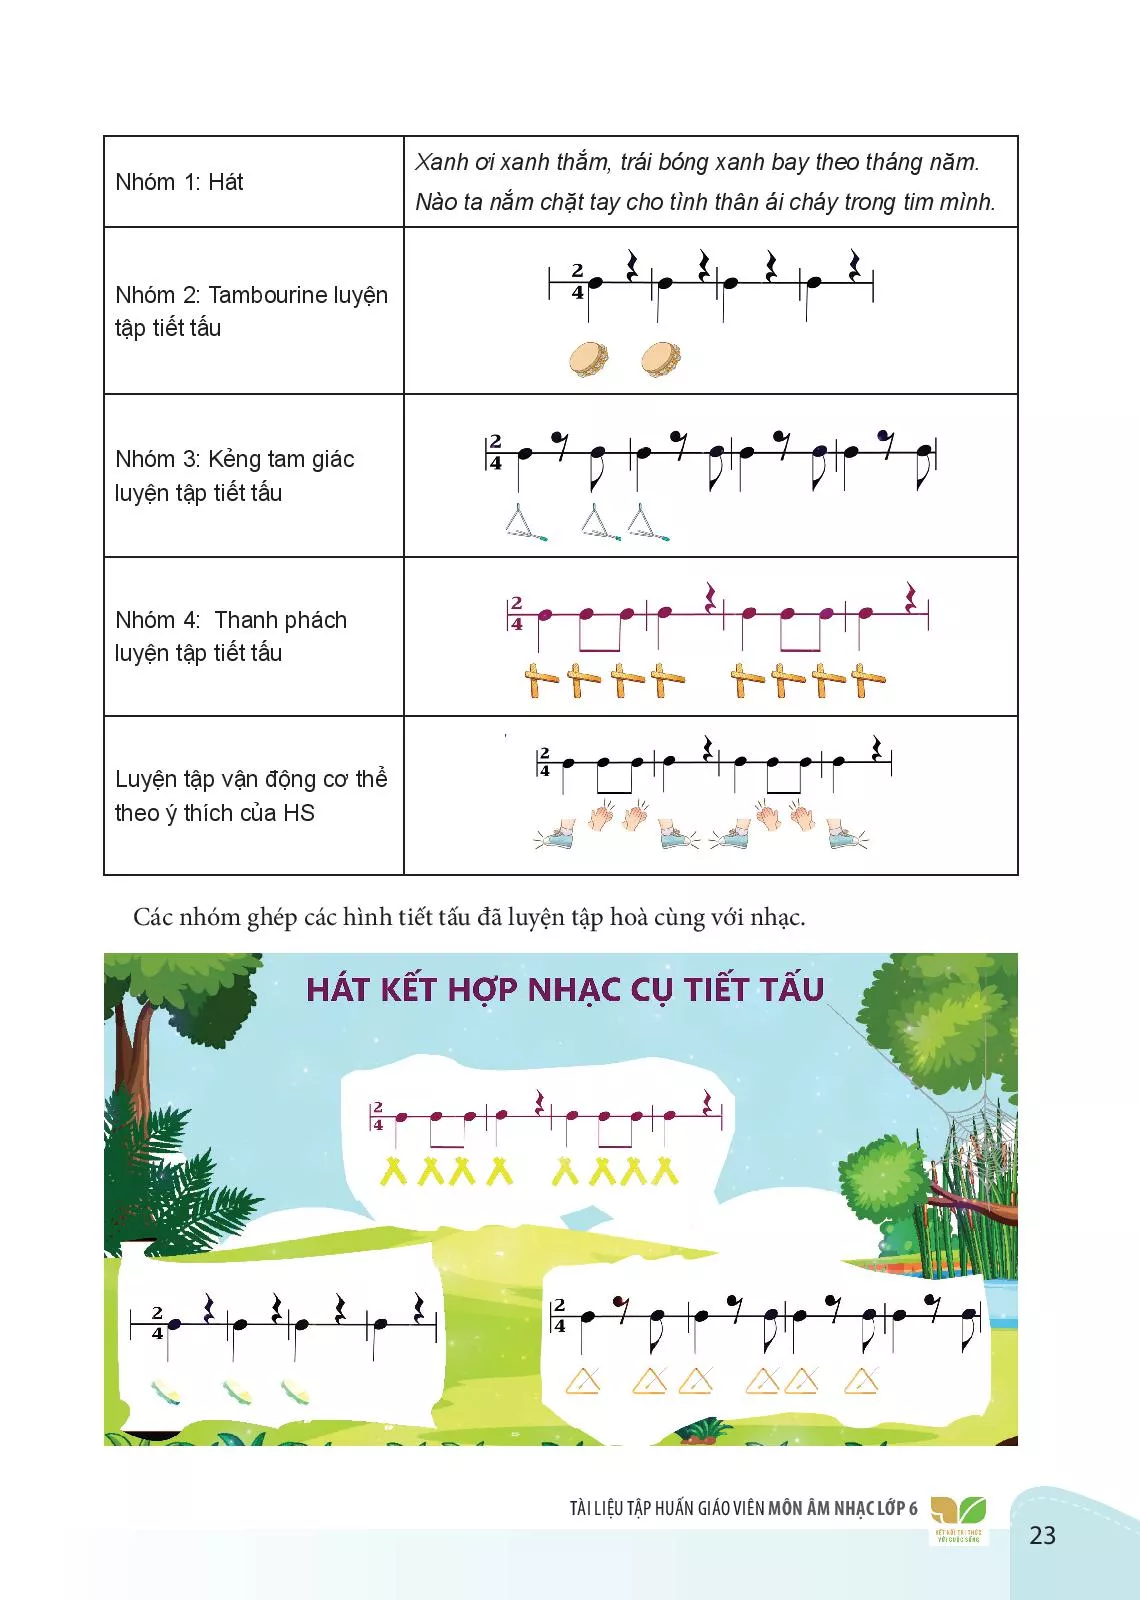 3.2. Hướng dẫn và gợi ý phương pháp hình thức một số hình thức tổ chức hoạt động dạy học âm nhạc 